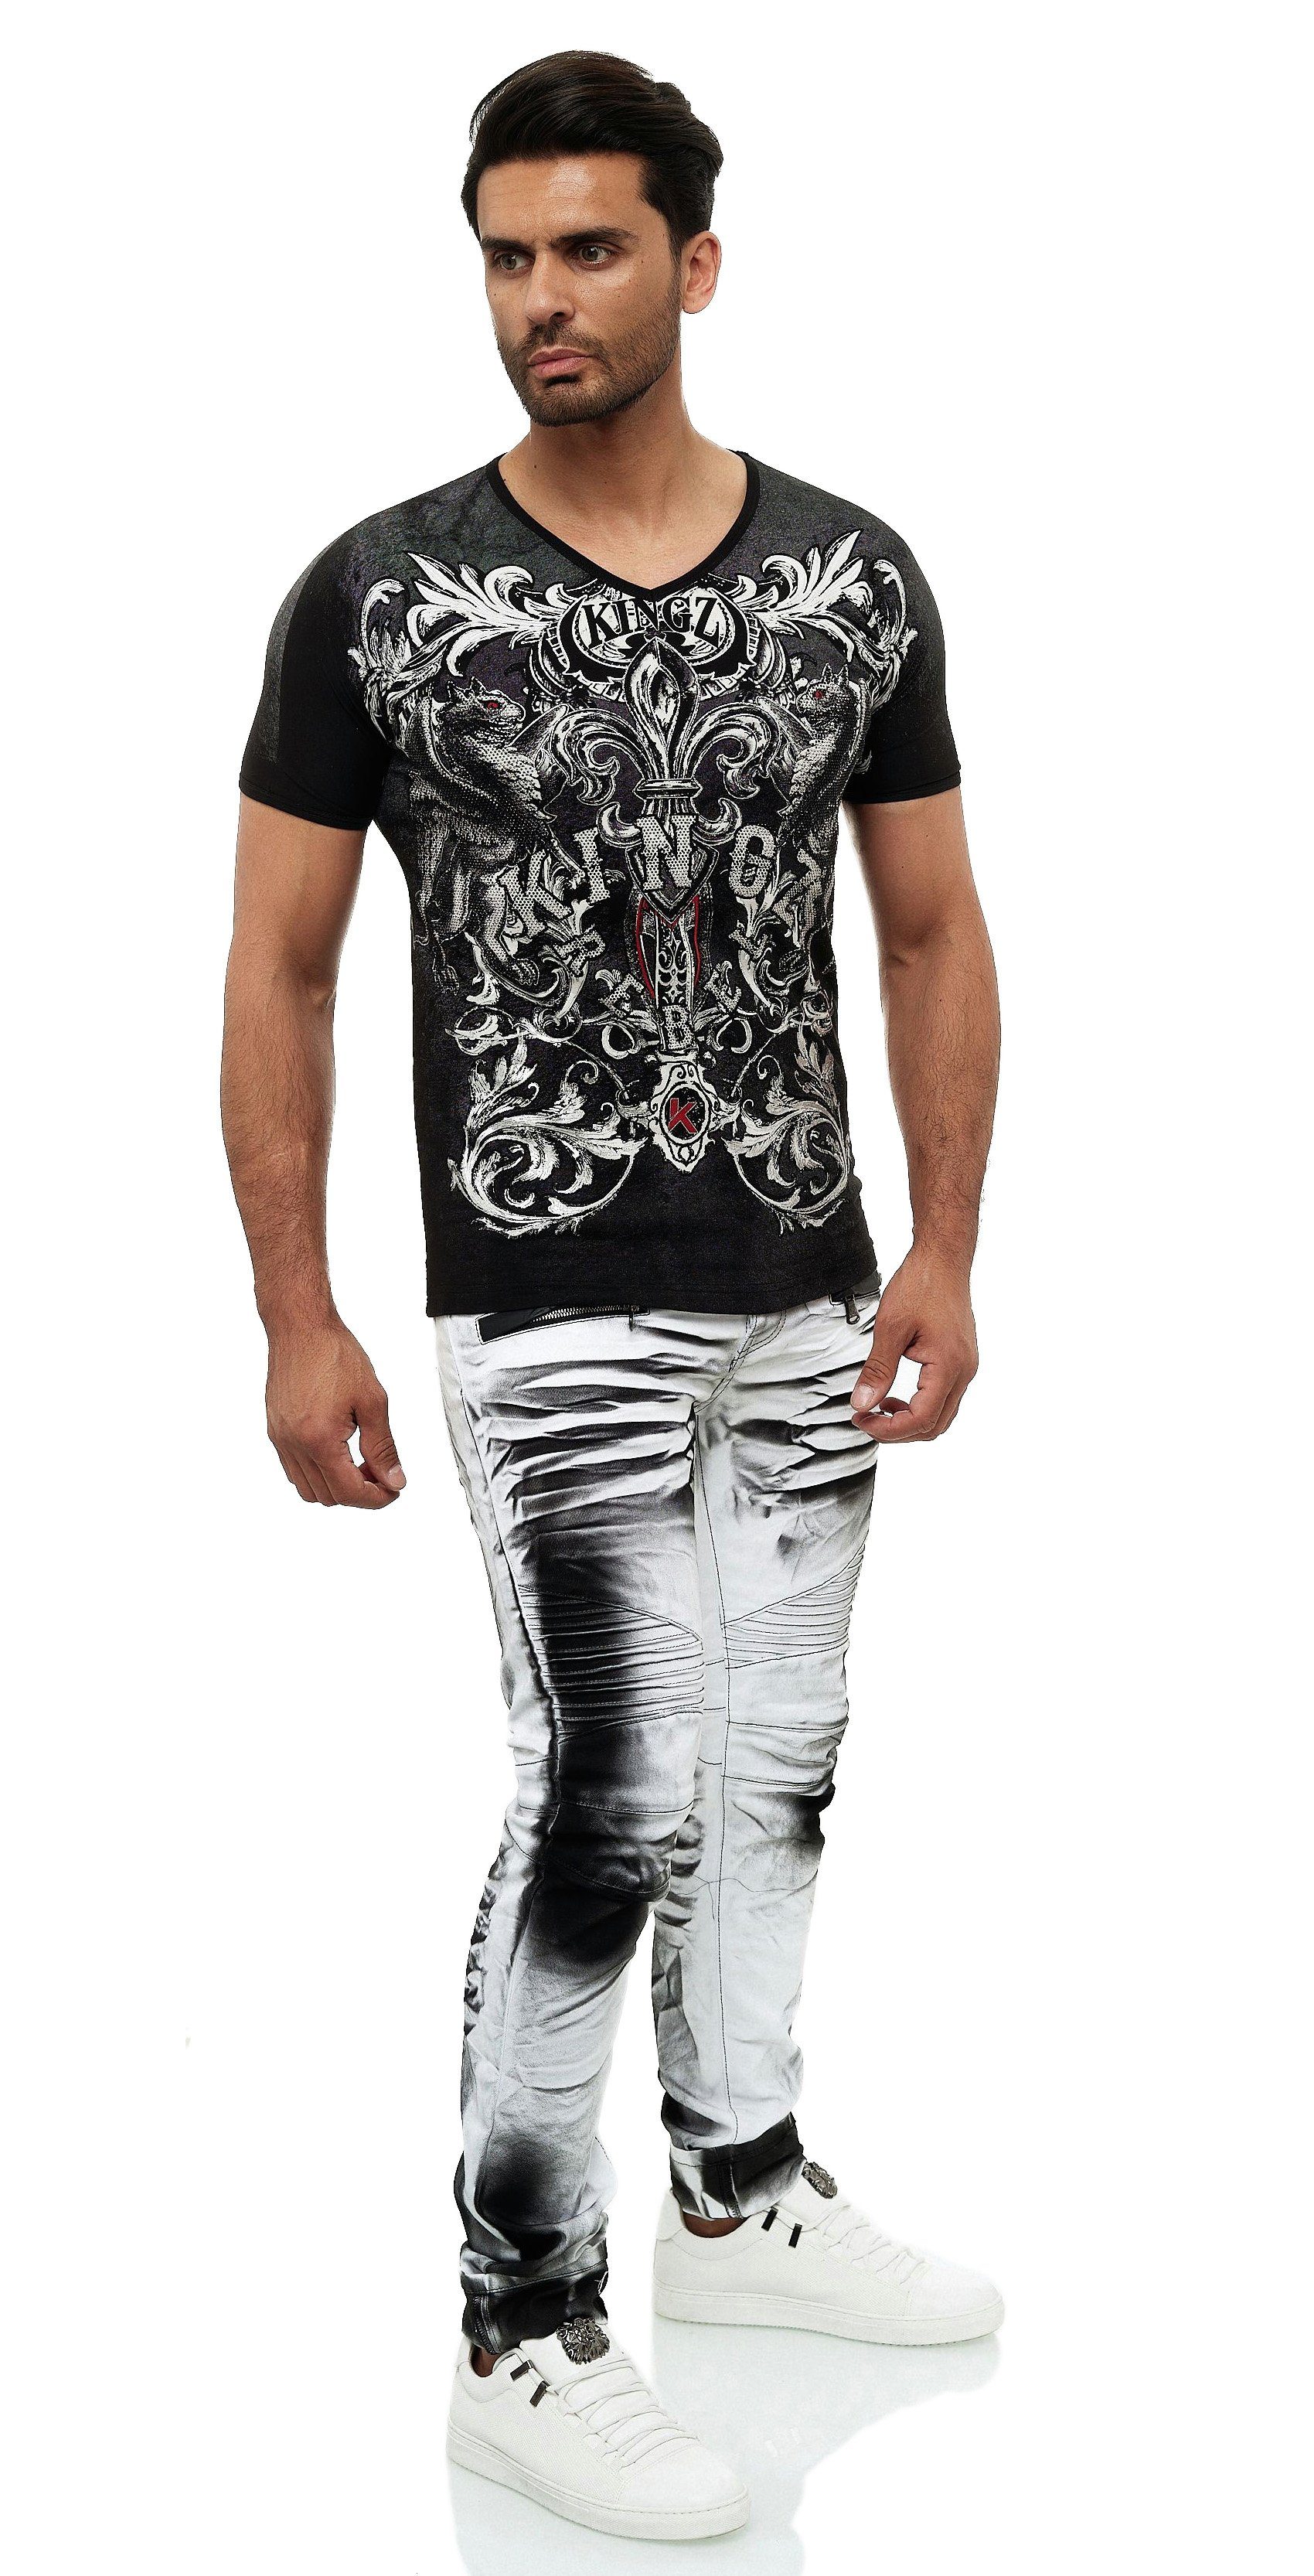 KINGZ coolem in T-Shirt Design schwarz-silberfarben